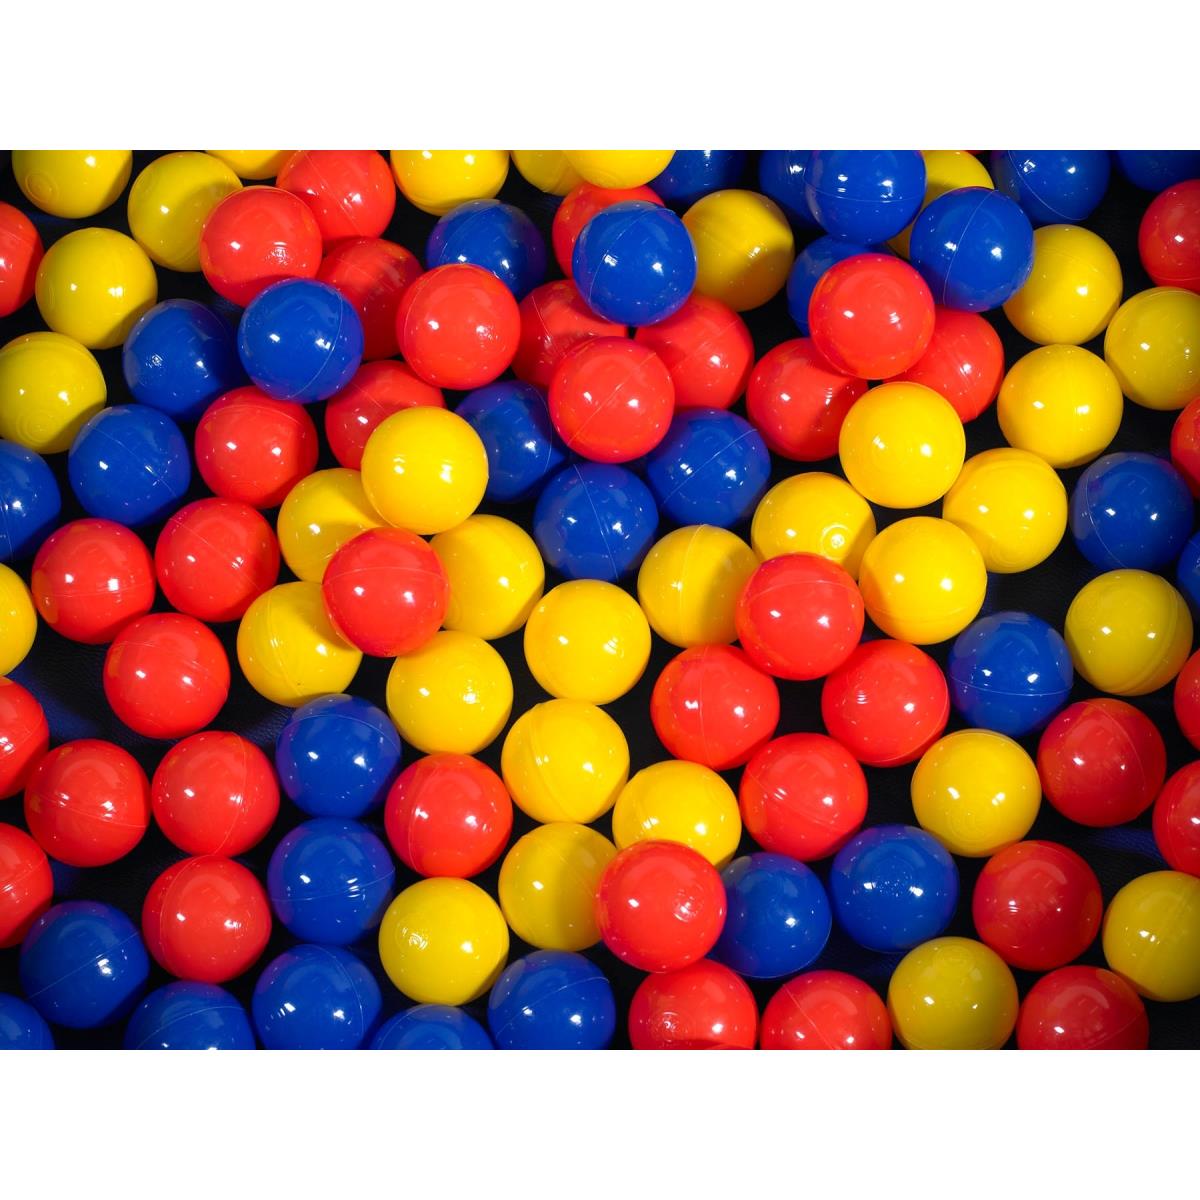 Cf331-533 Mixed Color Balls - Multicolor, 2.75 X 2.75 X 2.75 In. - 500 Piece